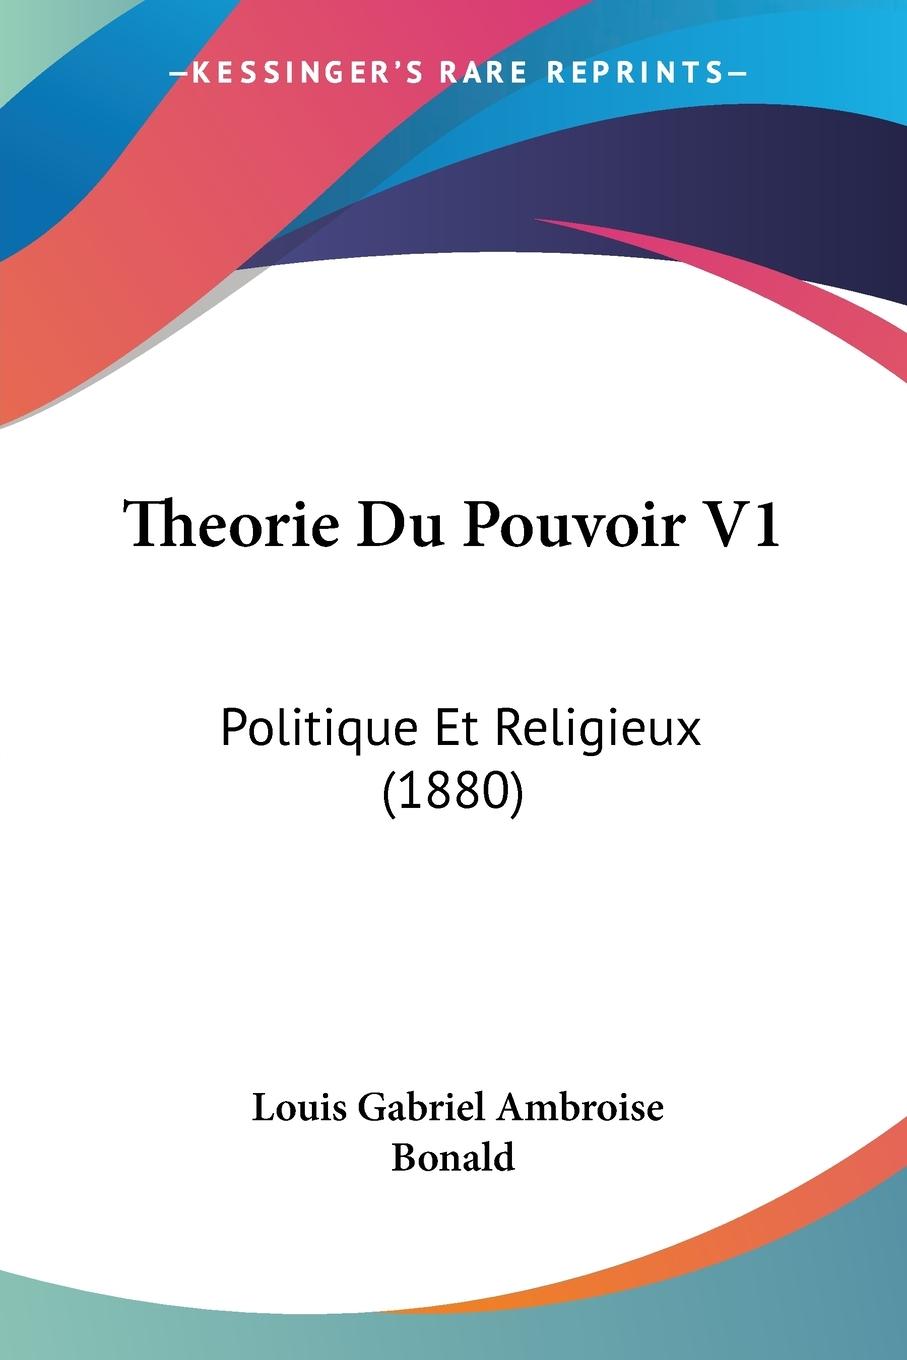 Theorie Du Pouvoir V1 - Bonald, Louis Gabriel Ambroise